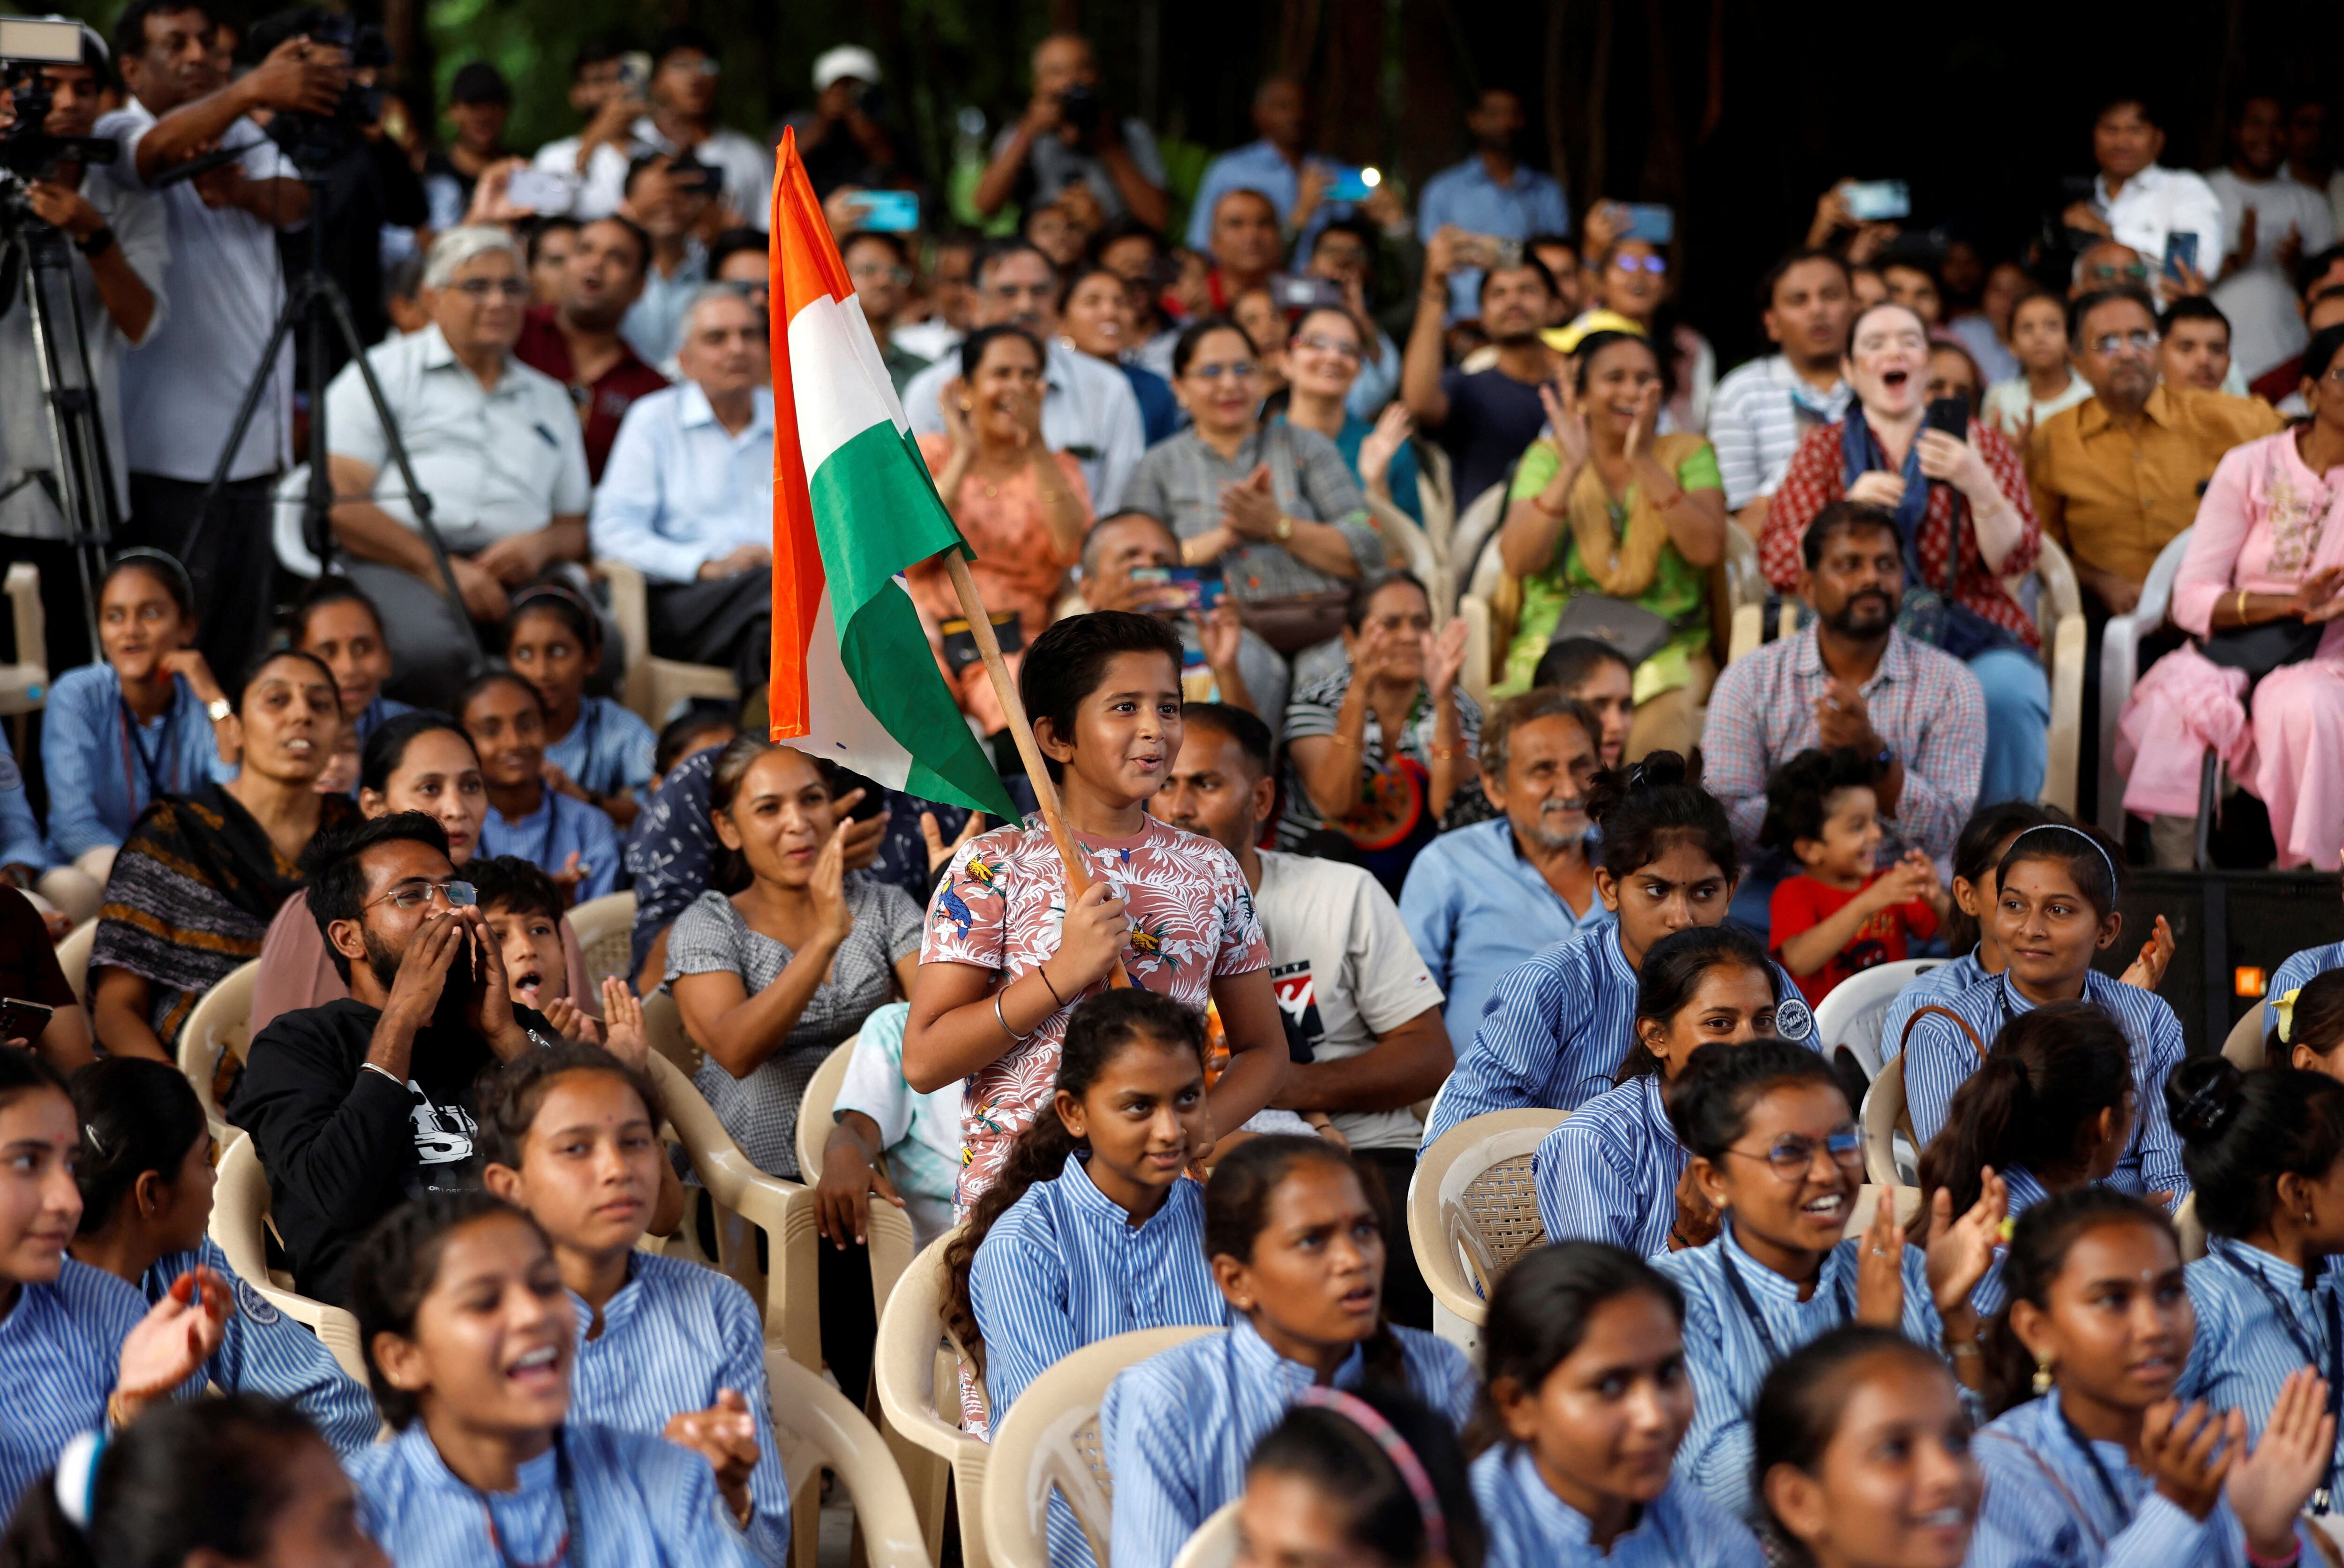 Templos y lugares sagrados de la India recibieron la visita masiva de creyentes, representantes religiosos, y ciudadanos que acudieron para celebrar el éxito de la misión lunar Chandrayaan-3 (REUTERS/Amit Dave)